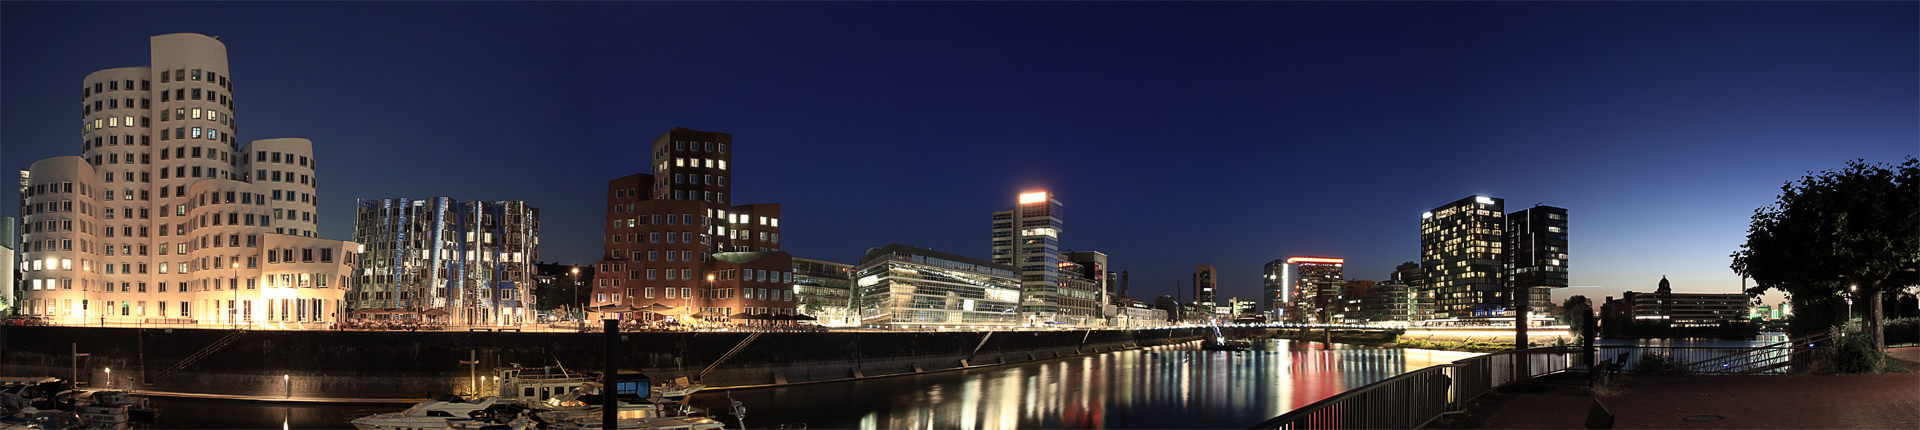 Düsseldorf Mediahafen - kurz nach Sonnenuntergang